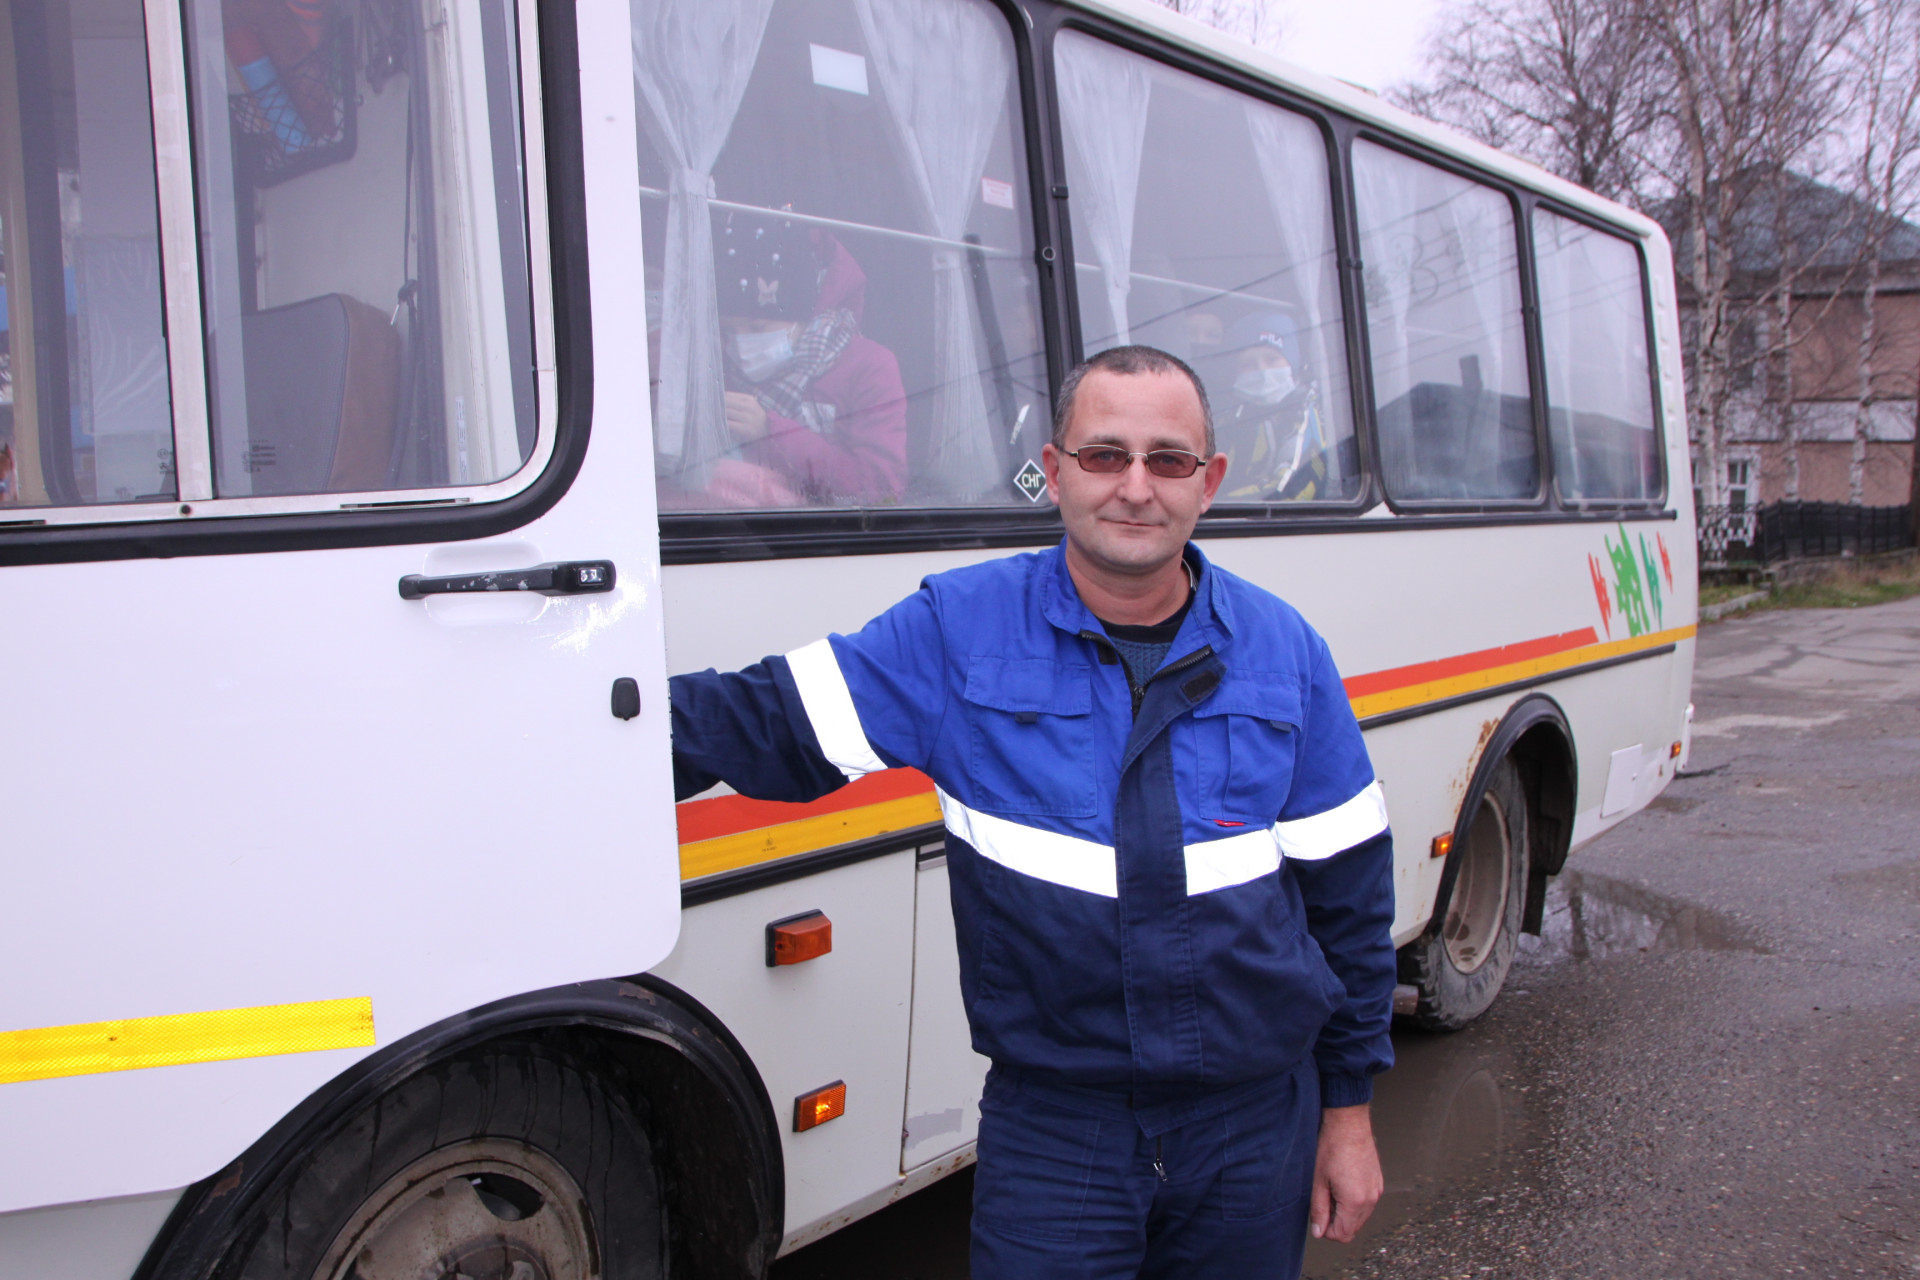 Каждый день автобусным транспортом в нашем районе пользуются сотни пассажиров. За их комфорт и безопасность отвечают 6 водителей ООО «Парабельское АТП